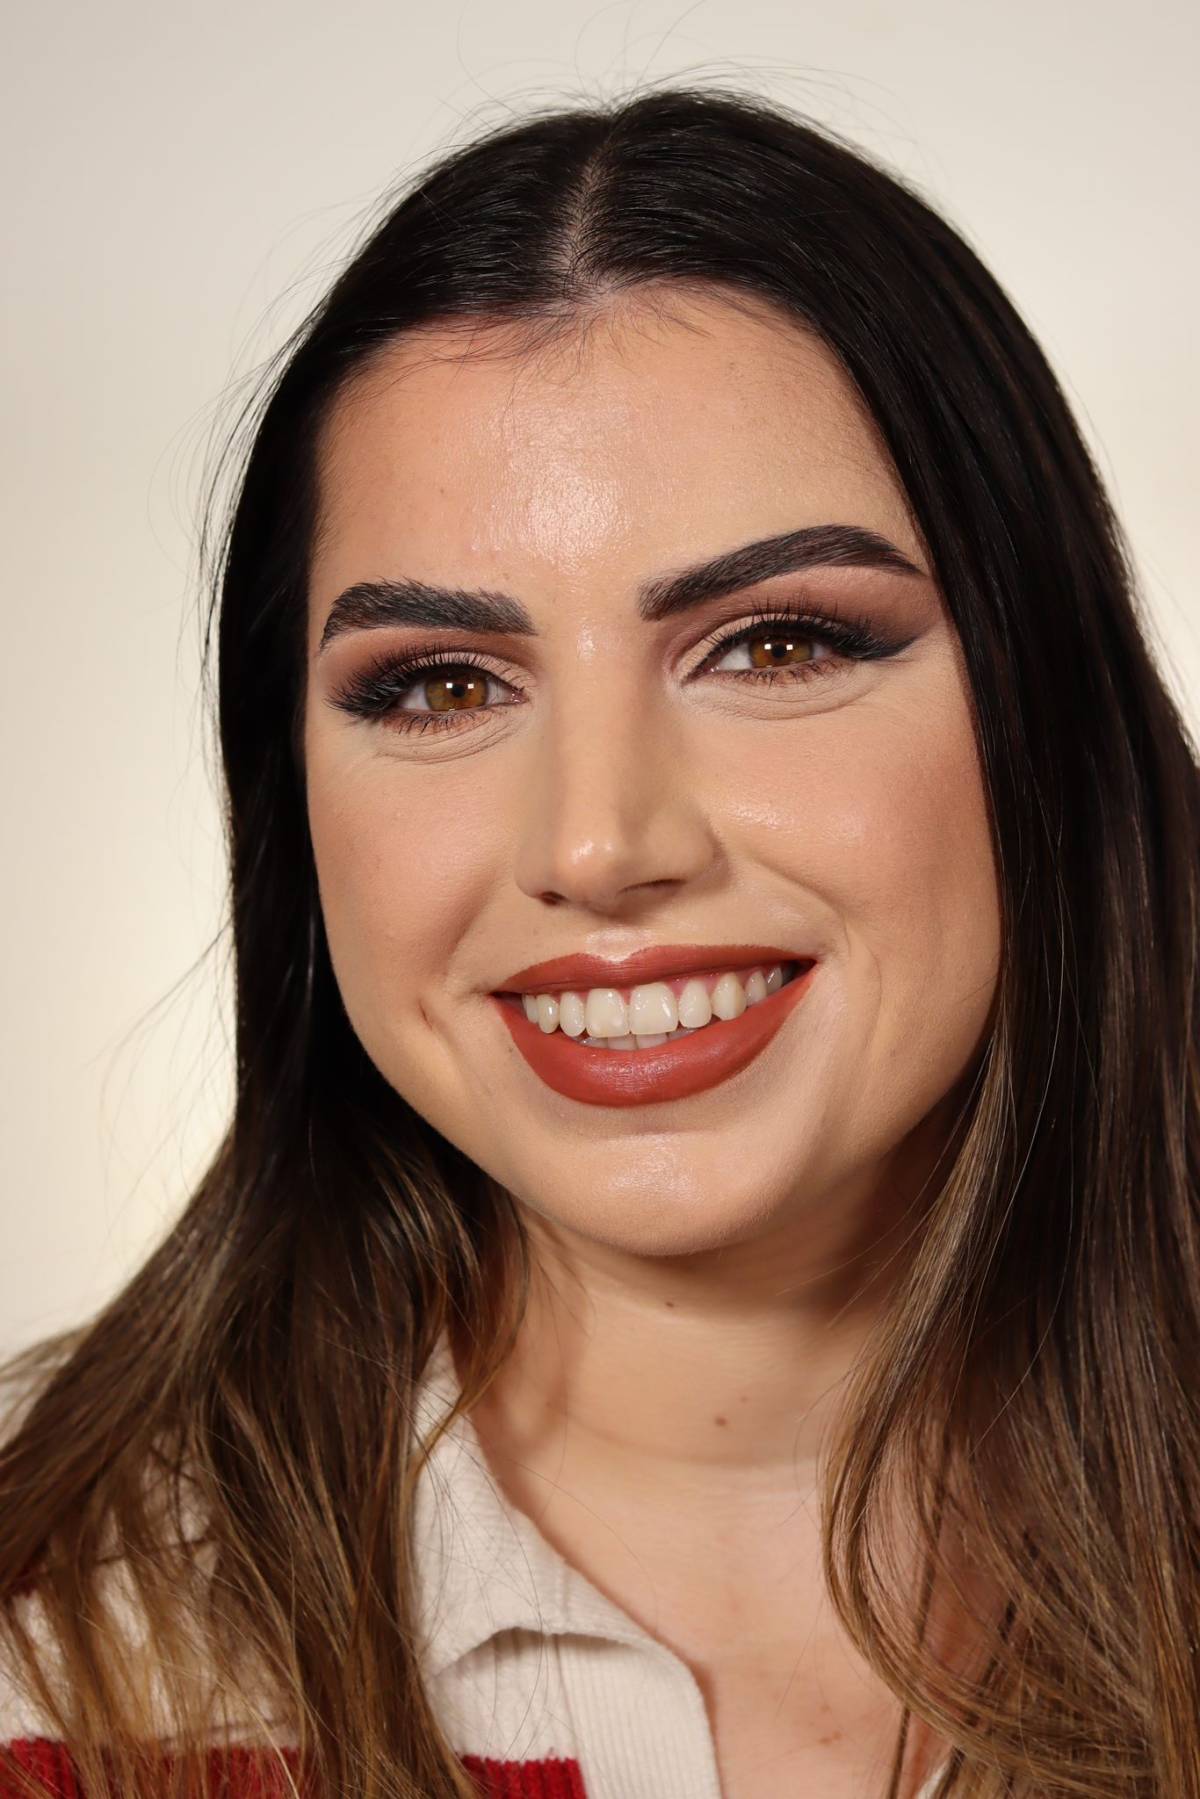 Raquel Brandão - Beauty and Make Up - Matosinhos - Maquilhagem para Eventos